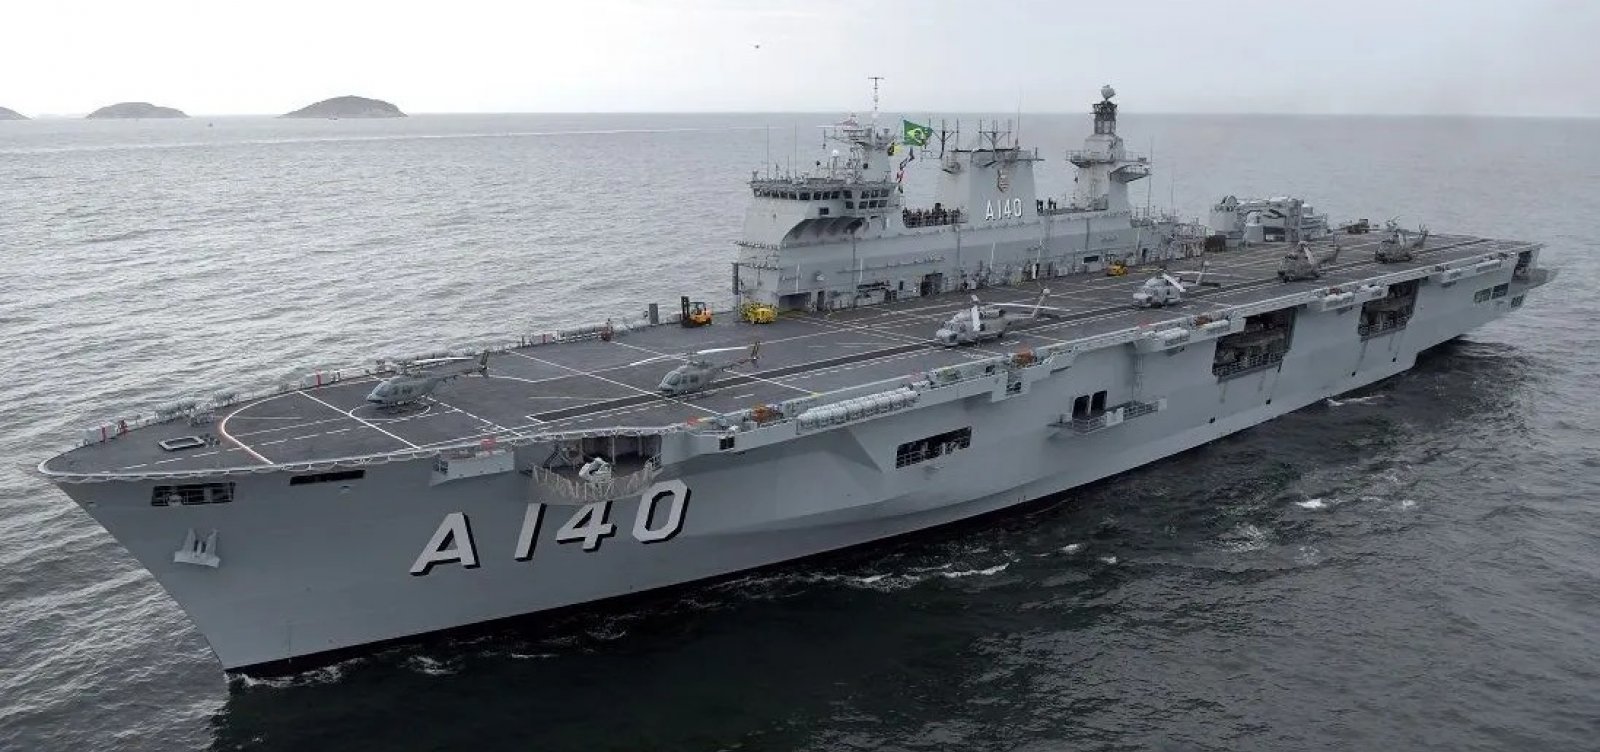 Marinha do Brasil envia maior navio de guerra da América Latina para o Rio Grande do Sul